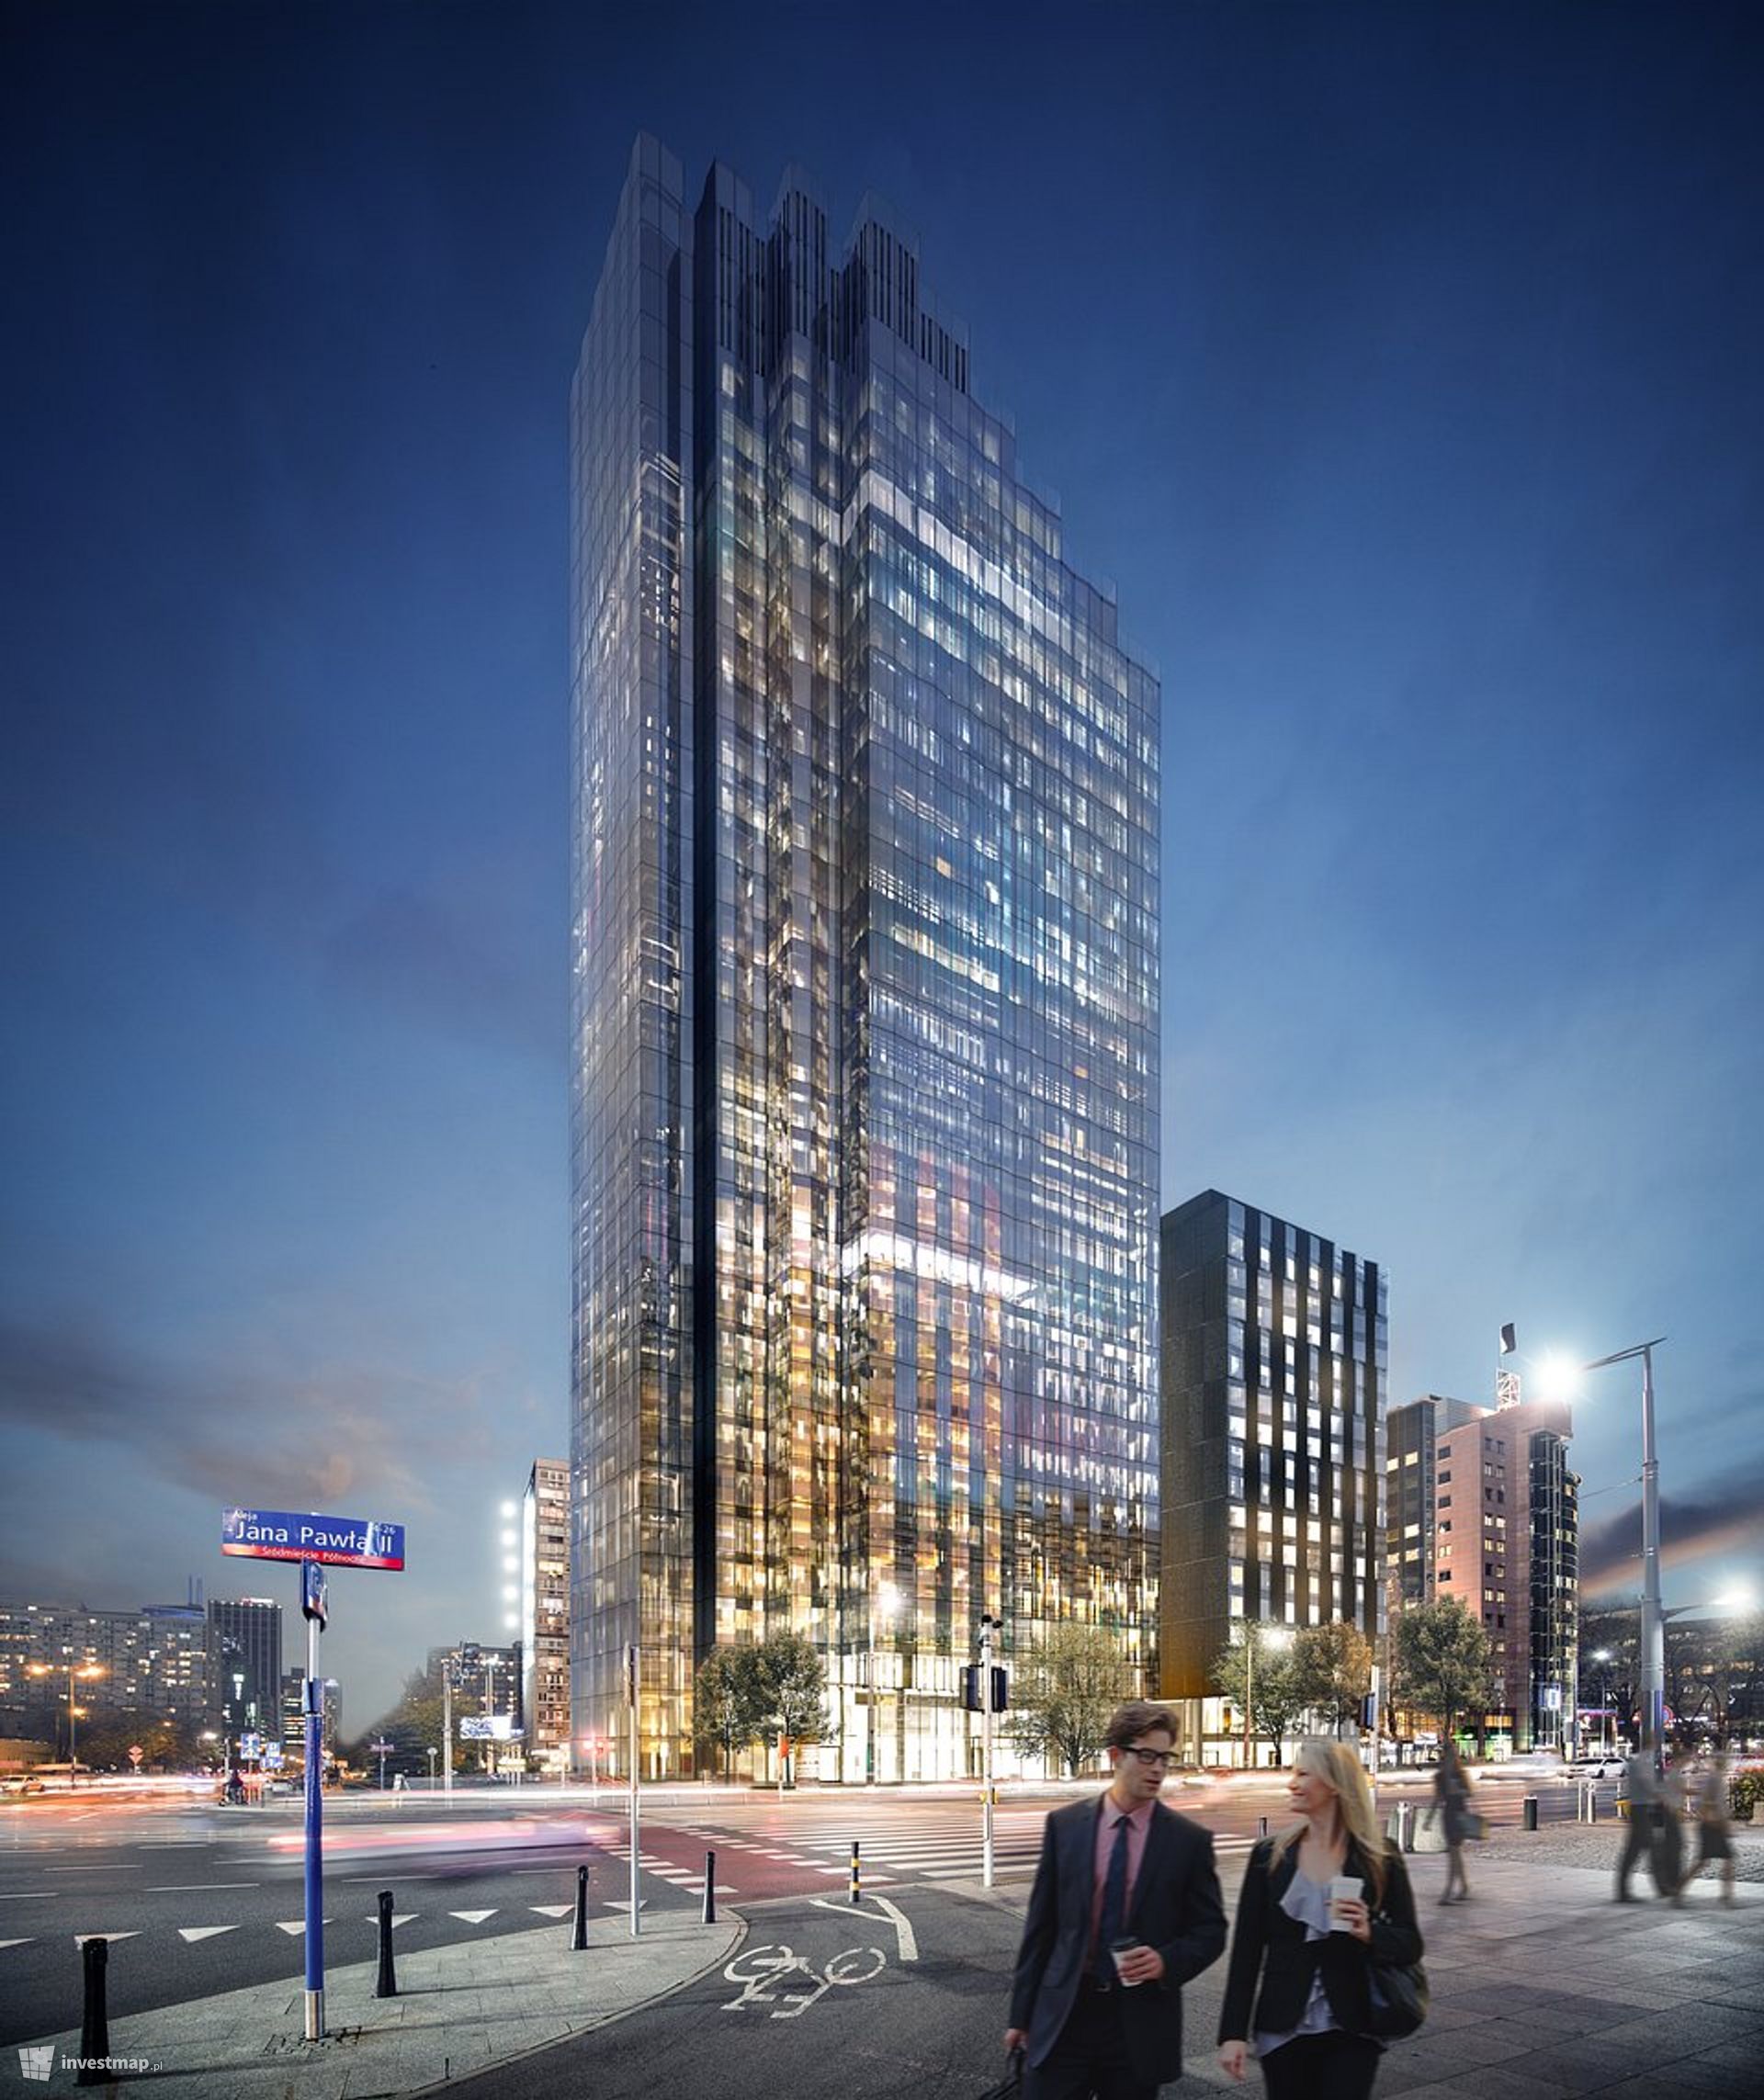 W centrum Warszawy powstaje nowy kompleks biurowo-hotelowy ze 130-metrowym wieżowcem 